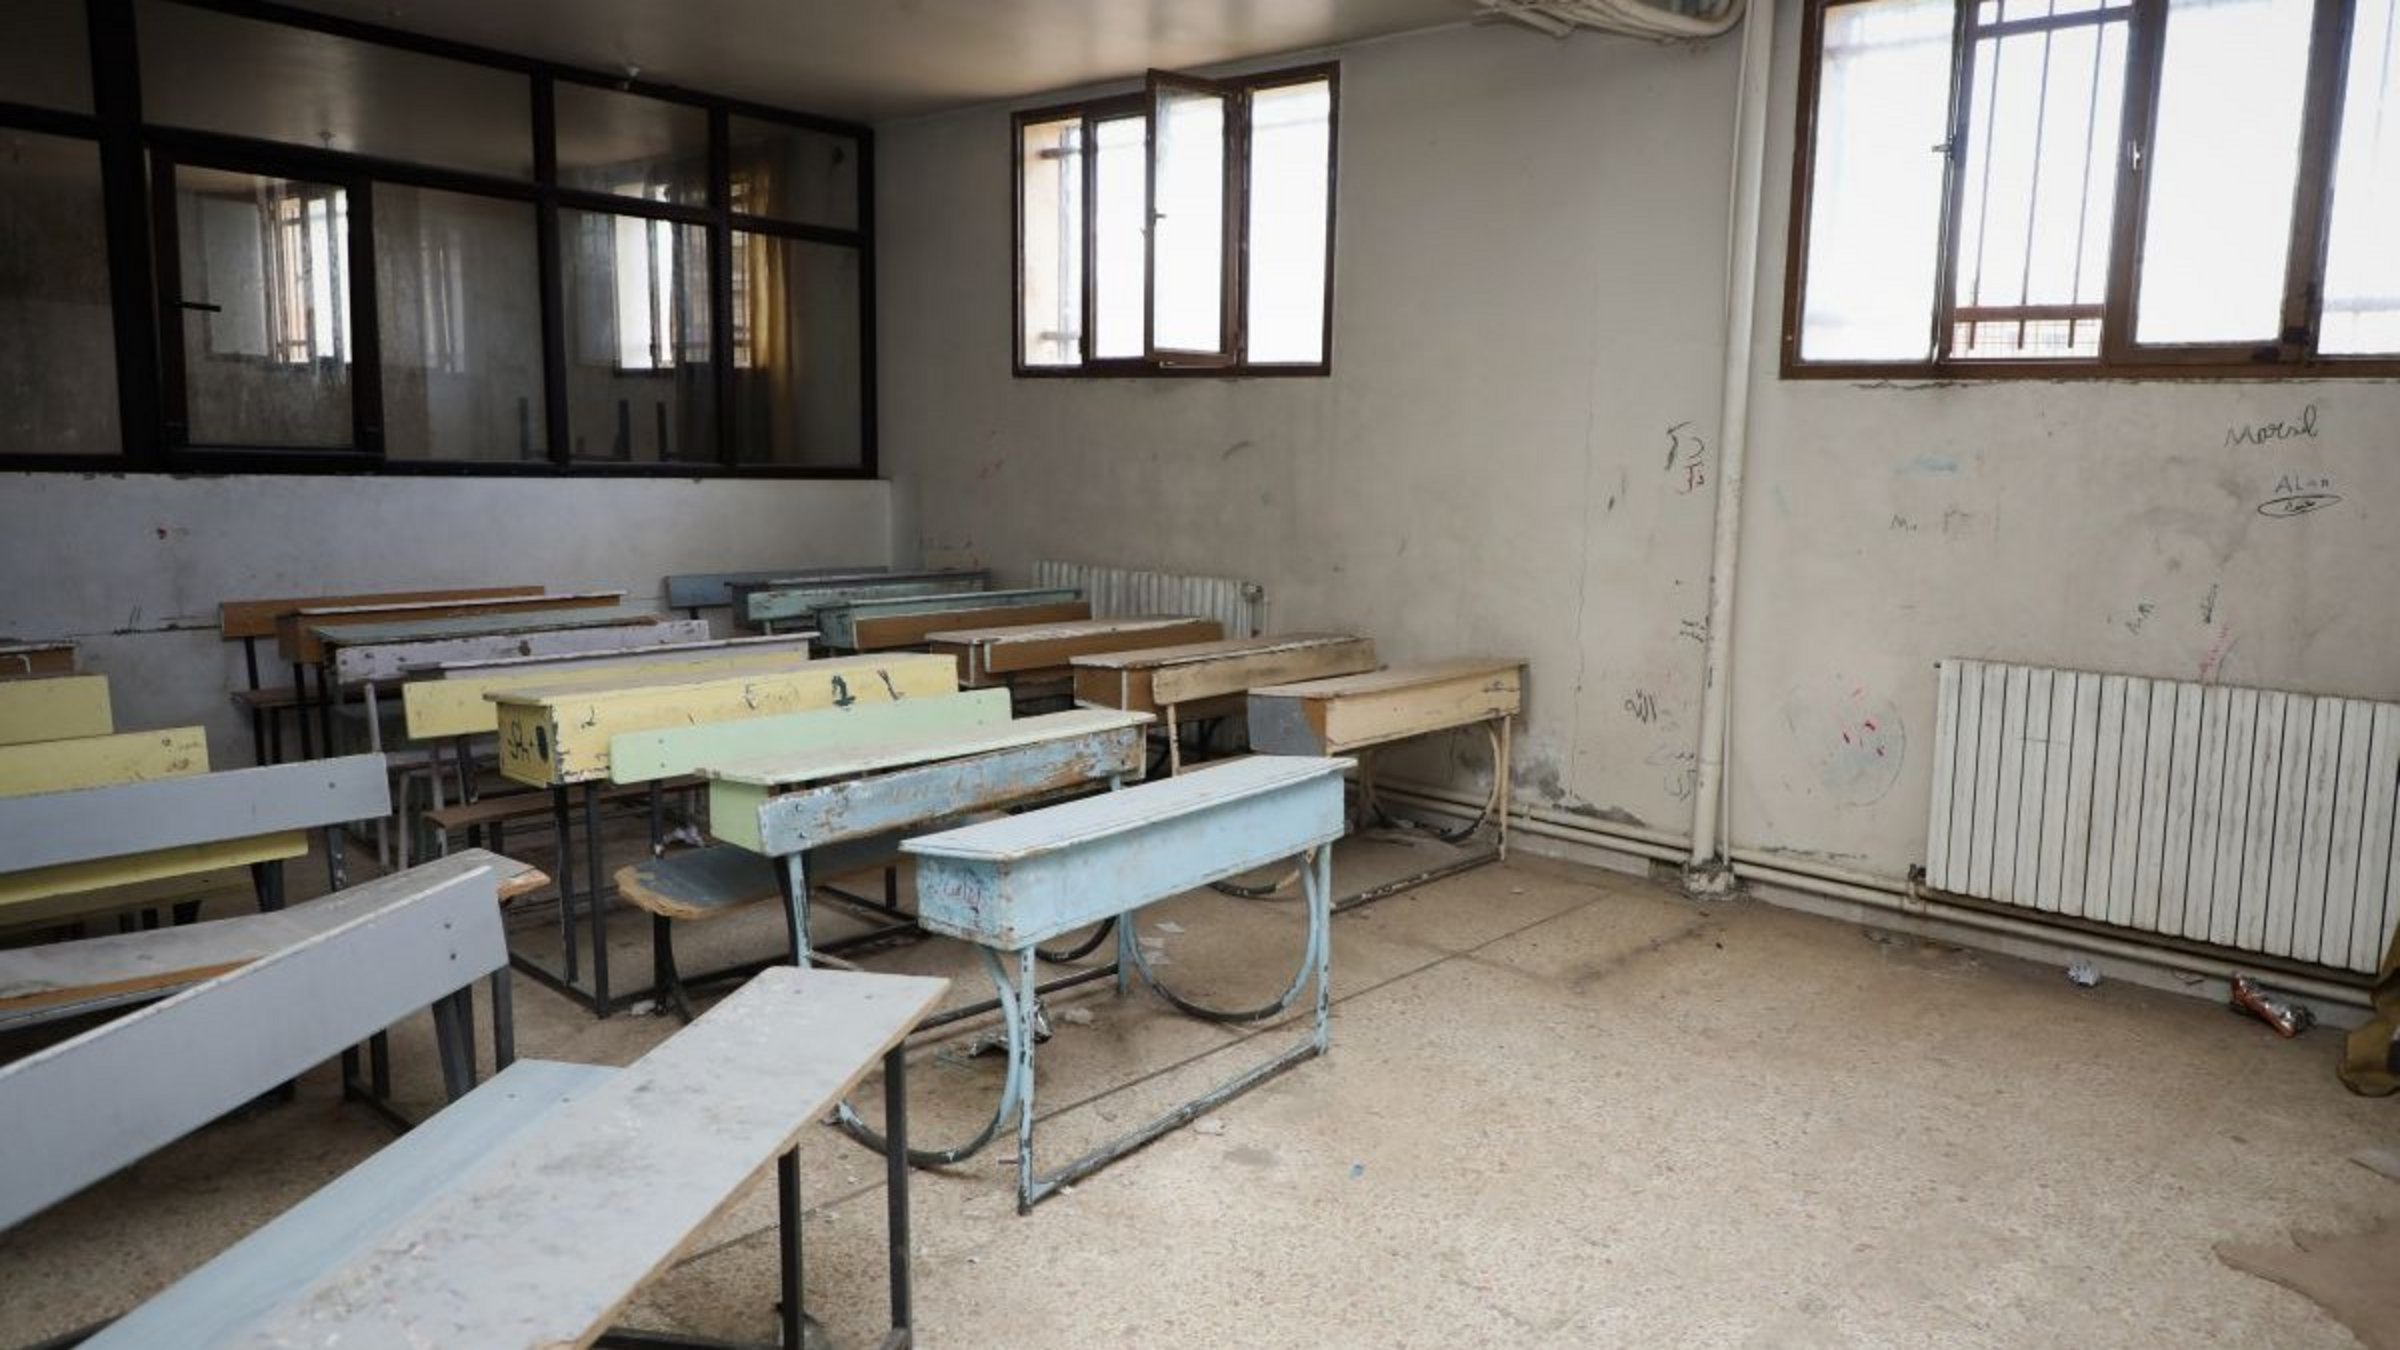 Spenden Syrien: Schulbänke in einem beschädigten Klassenzimmer